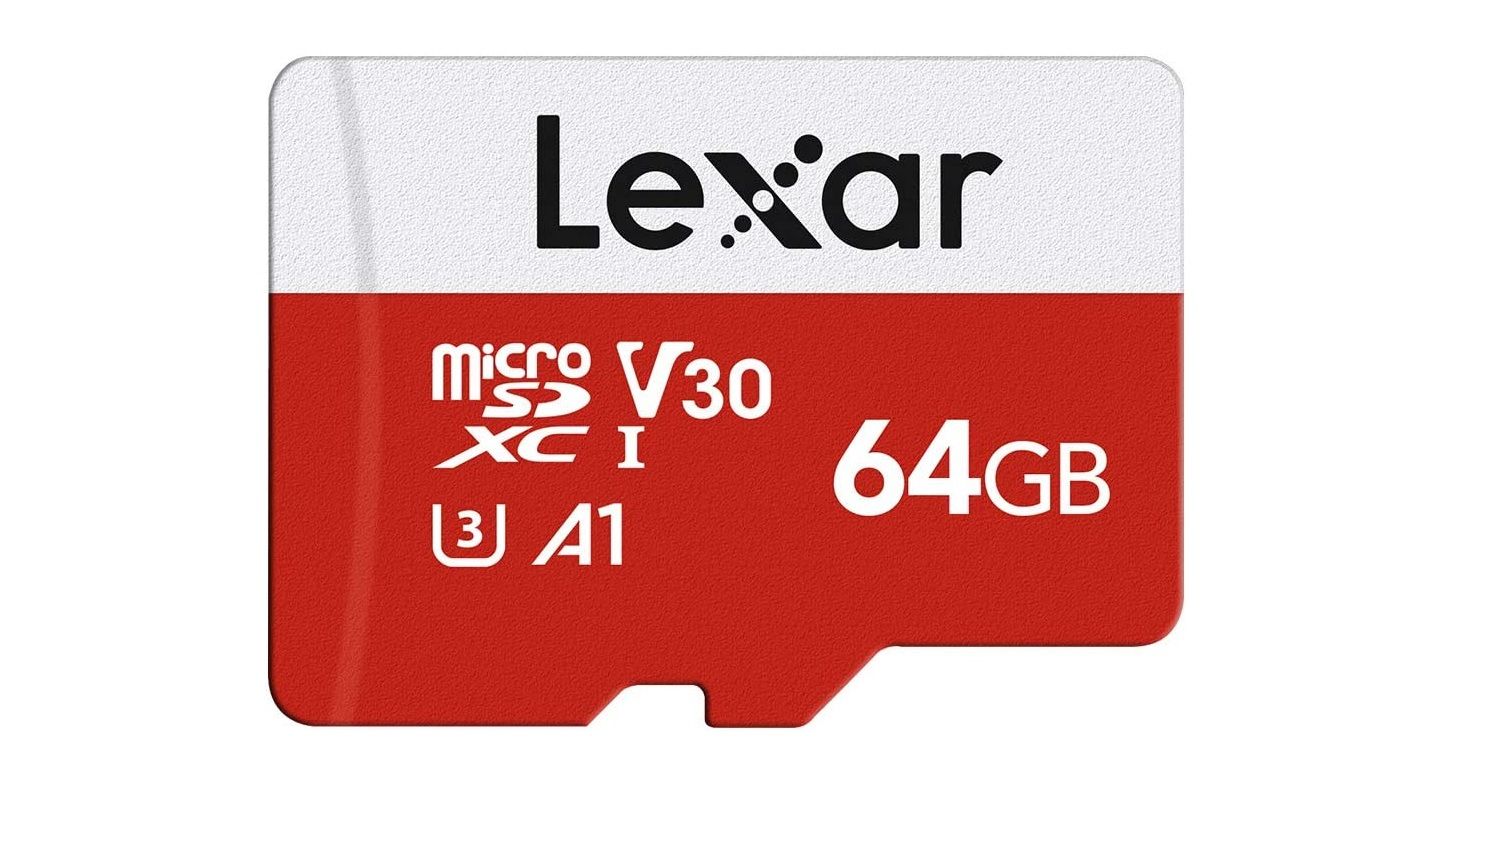 kartu microsd lexar 64gb menampilkan pewarnaan merah dan putih